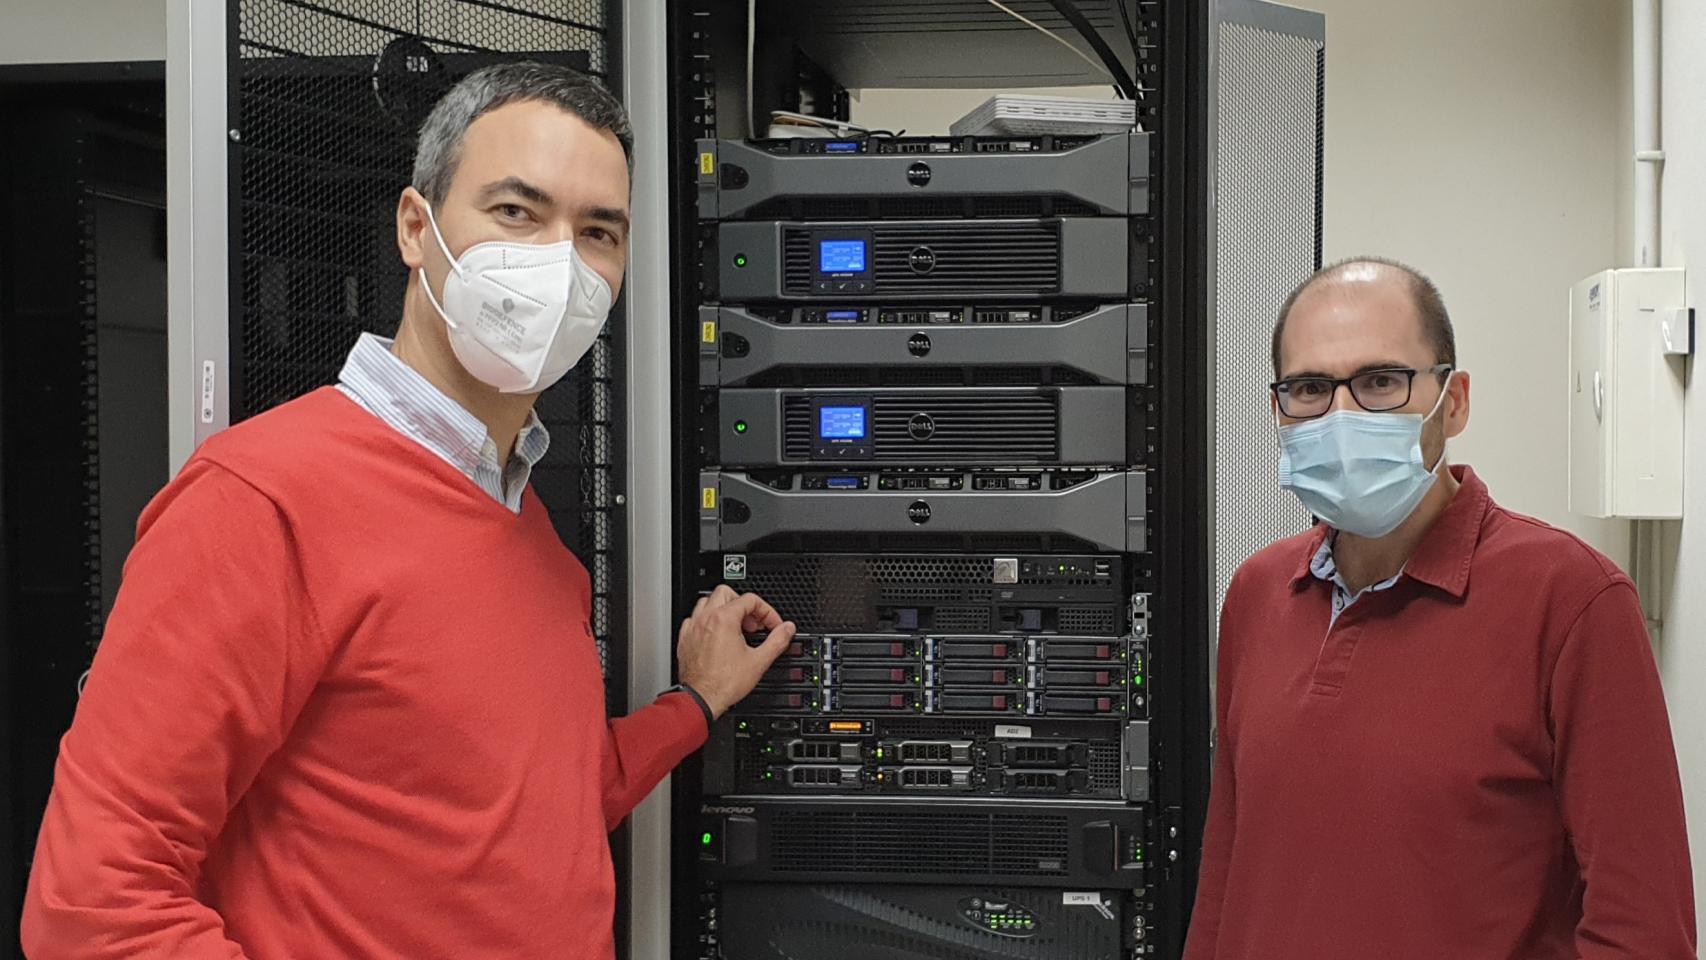 Ramón J. Durán Barroso e Ignacio de Miguel Jiménez, profesores de la ETS de Ingenieros de Telecomunicación de la UVa